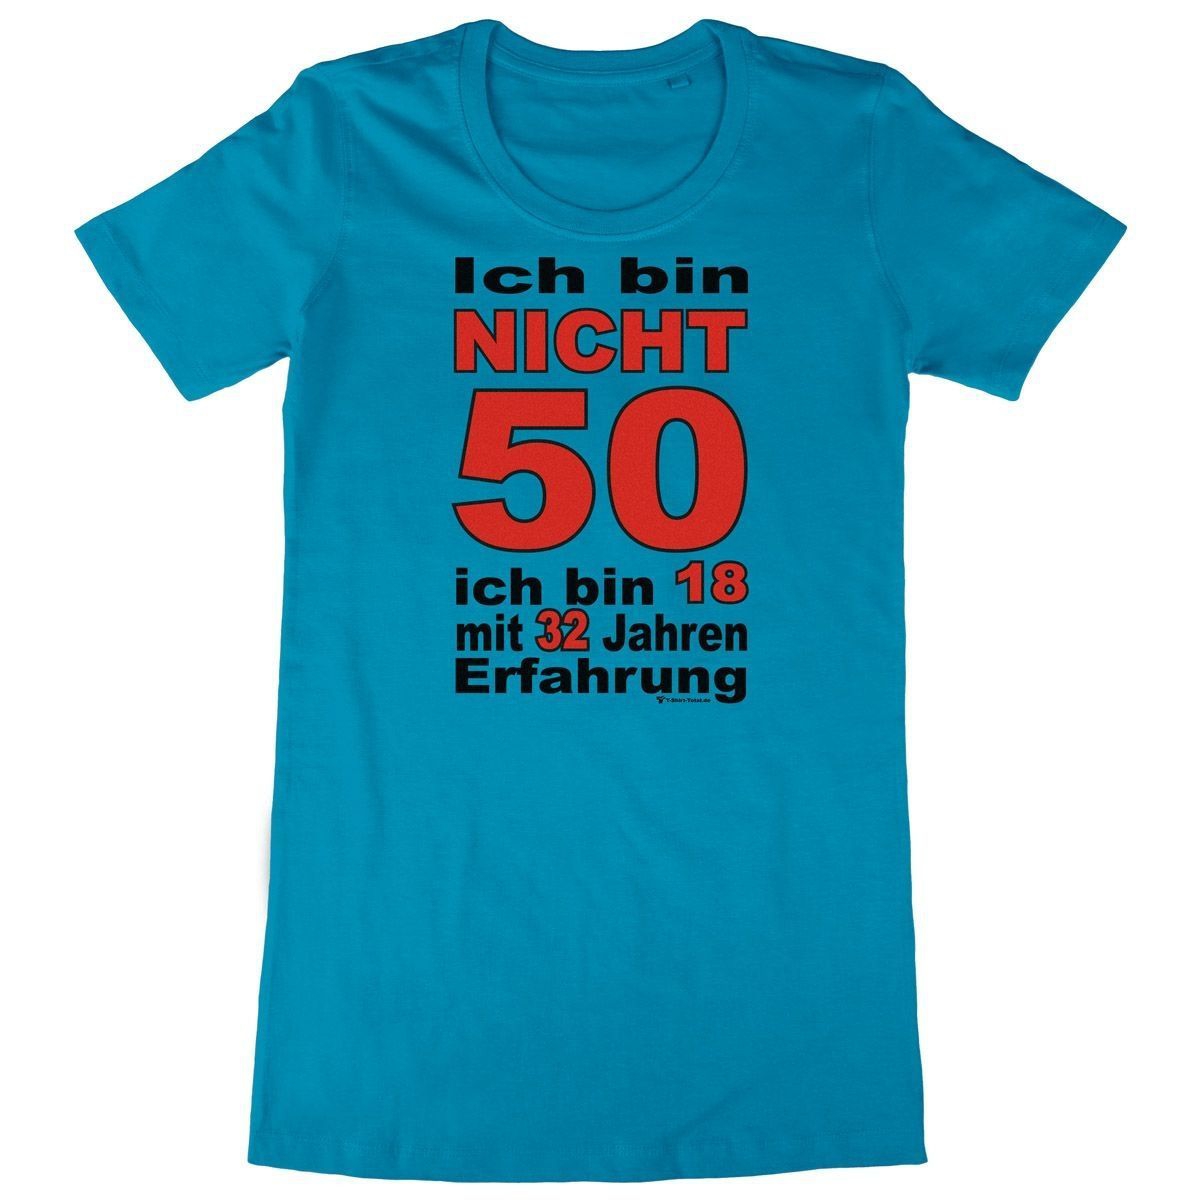 Bin nicht 50 Woman Long Shirt türkis Medium